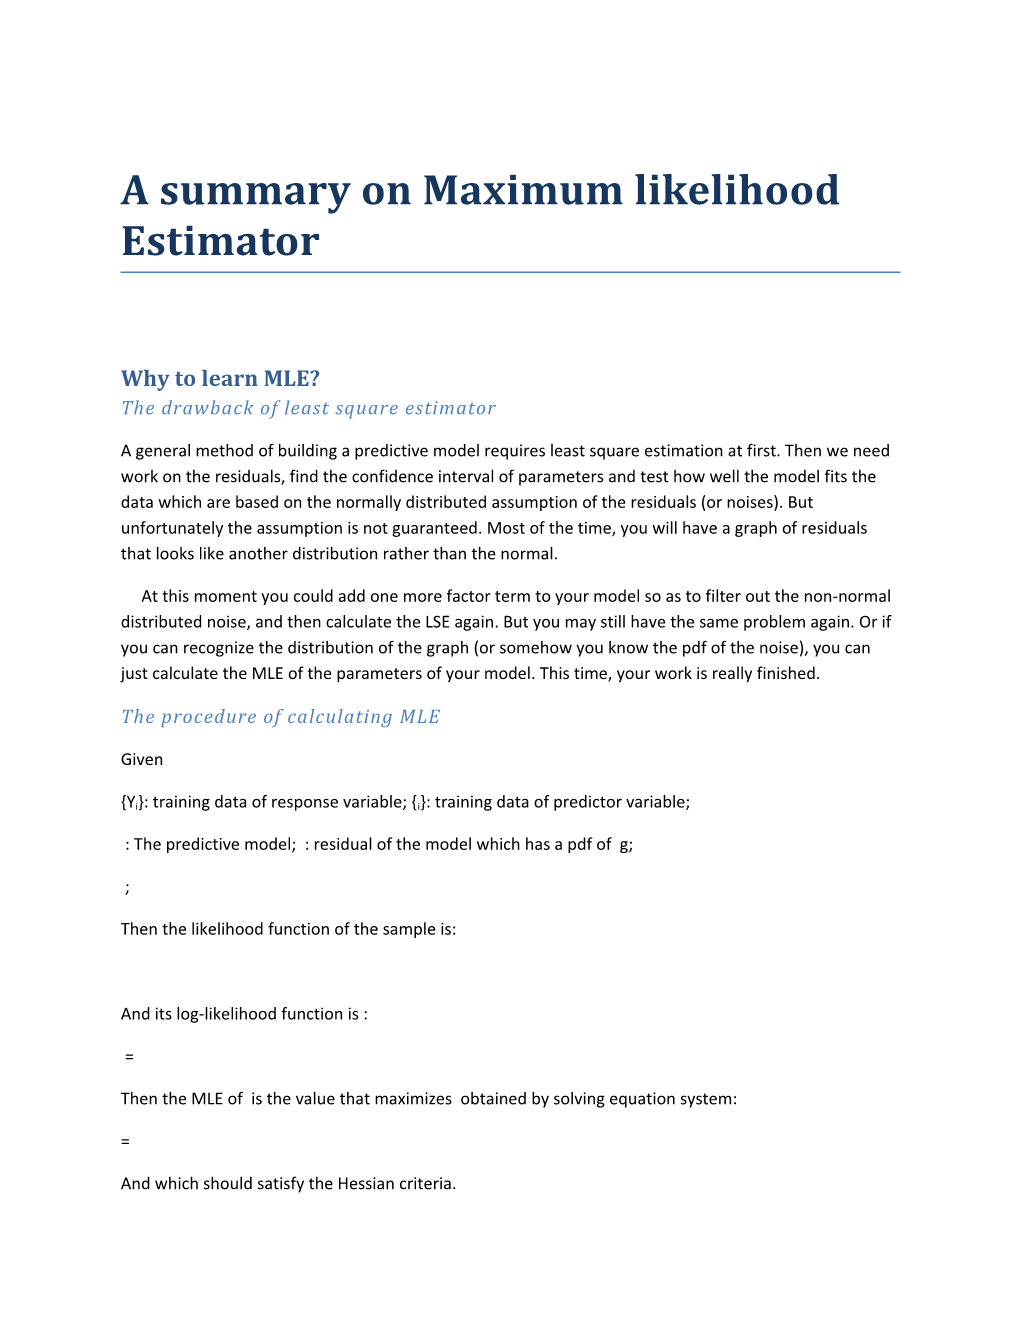 A Summary on Maximum Likelihood Estimator